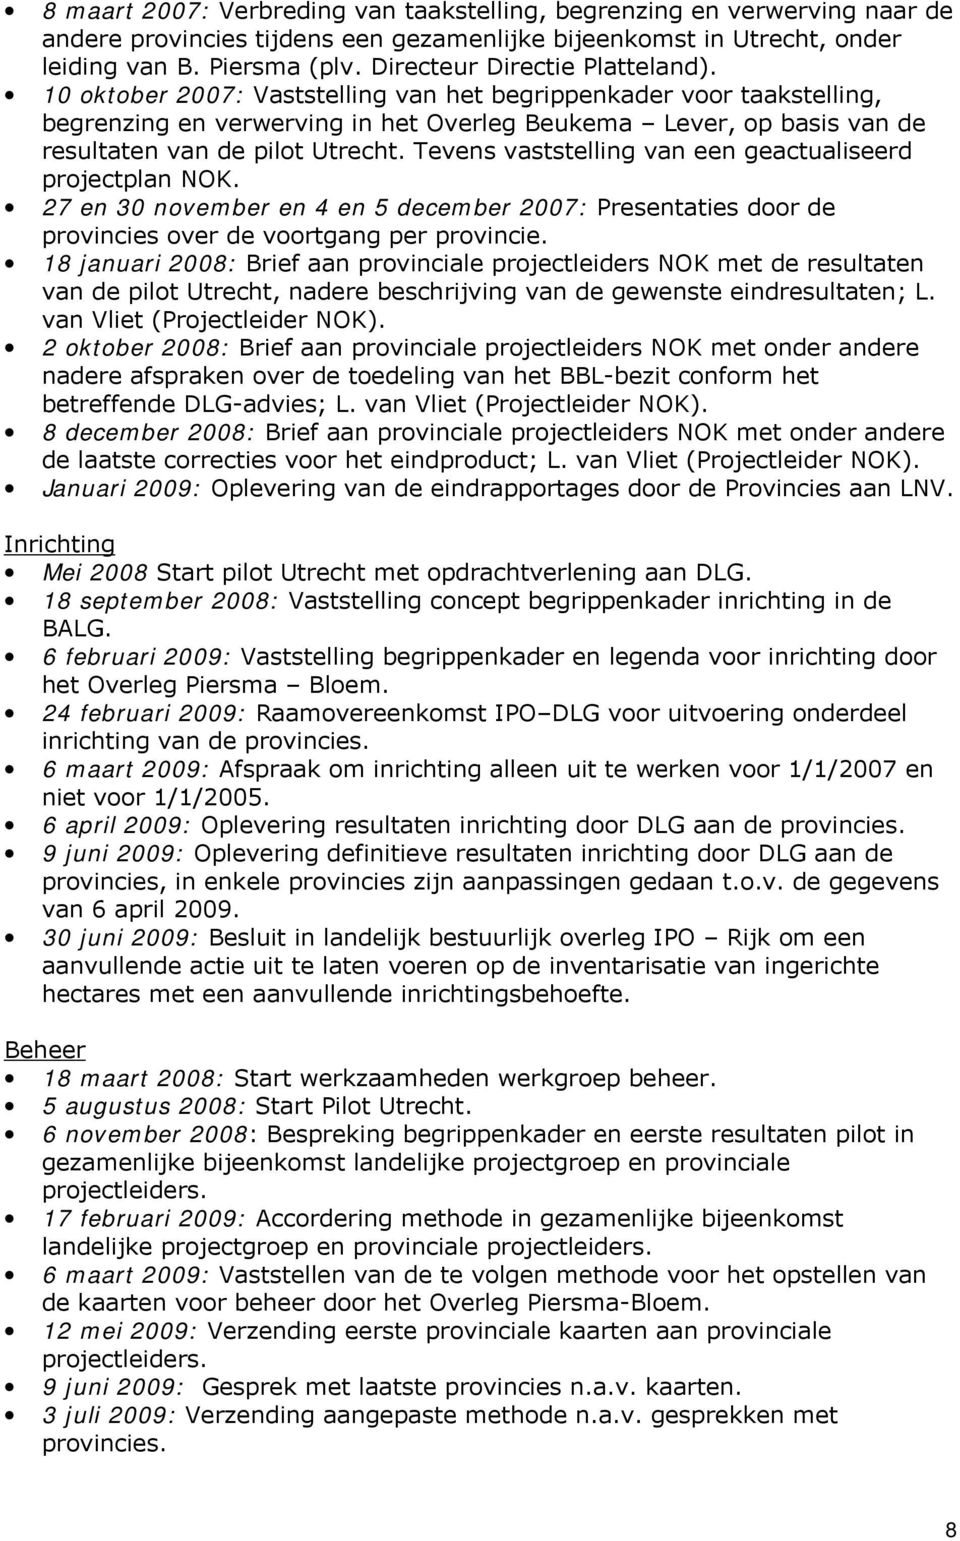 10 oktober 2007: Vaststelling van het begrippenkader voor taakstelling, begrenzing en verwerving in het Overleg Beukema Lever, op basis van de resultaten van de pilot Utrecht.